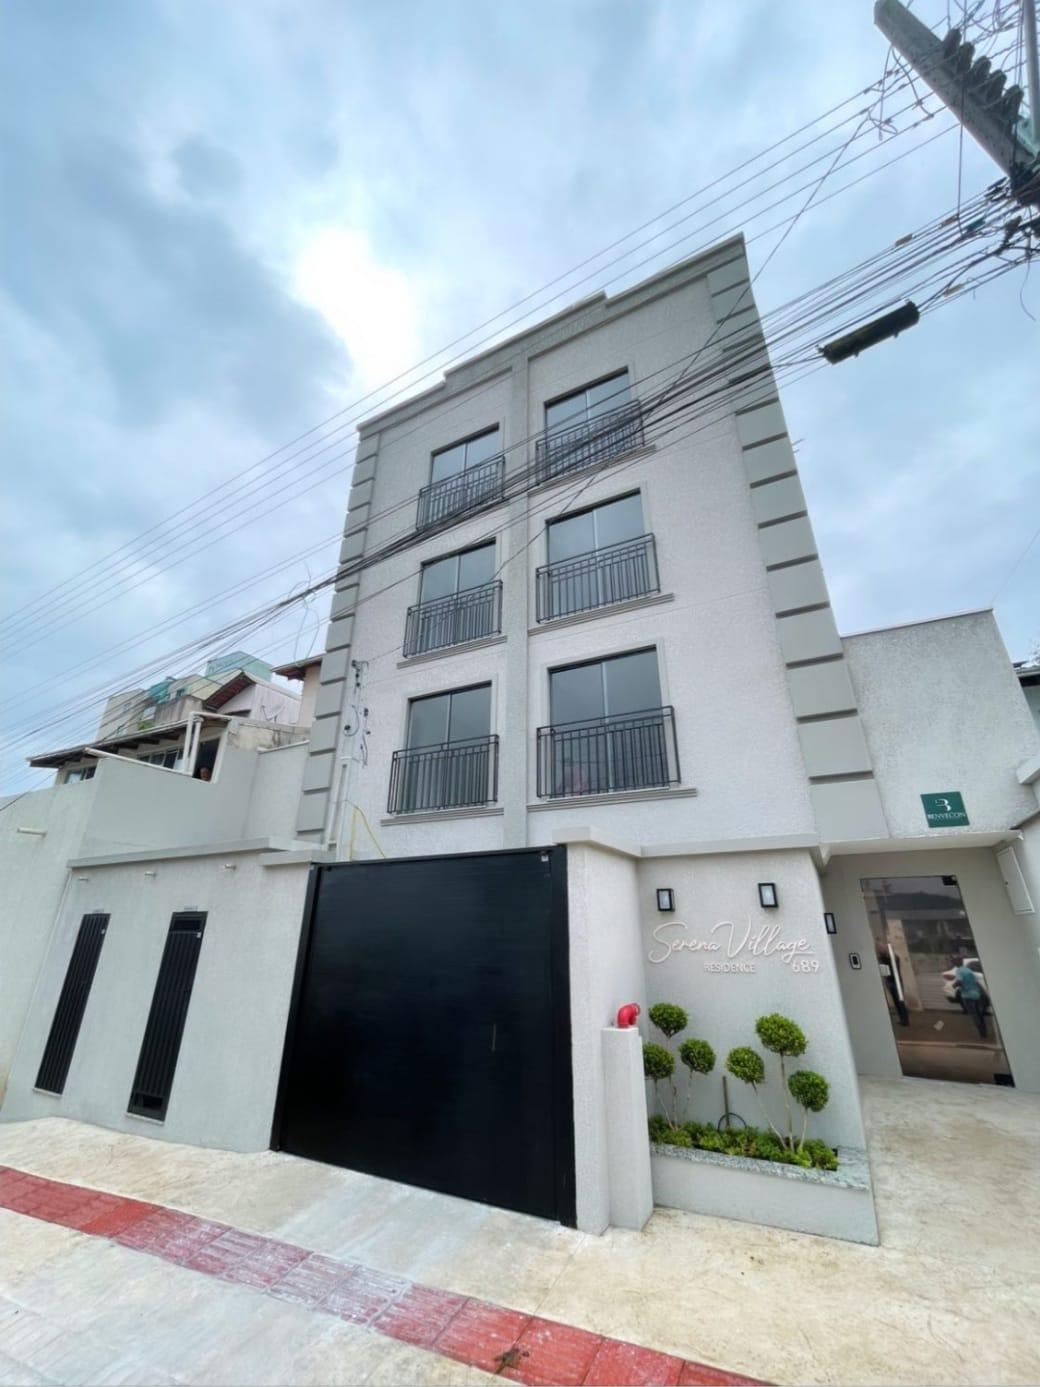 Apartamento à Venda em Tabuleiro - Camboriú - Santa Catarina - Serena Village Edifício